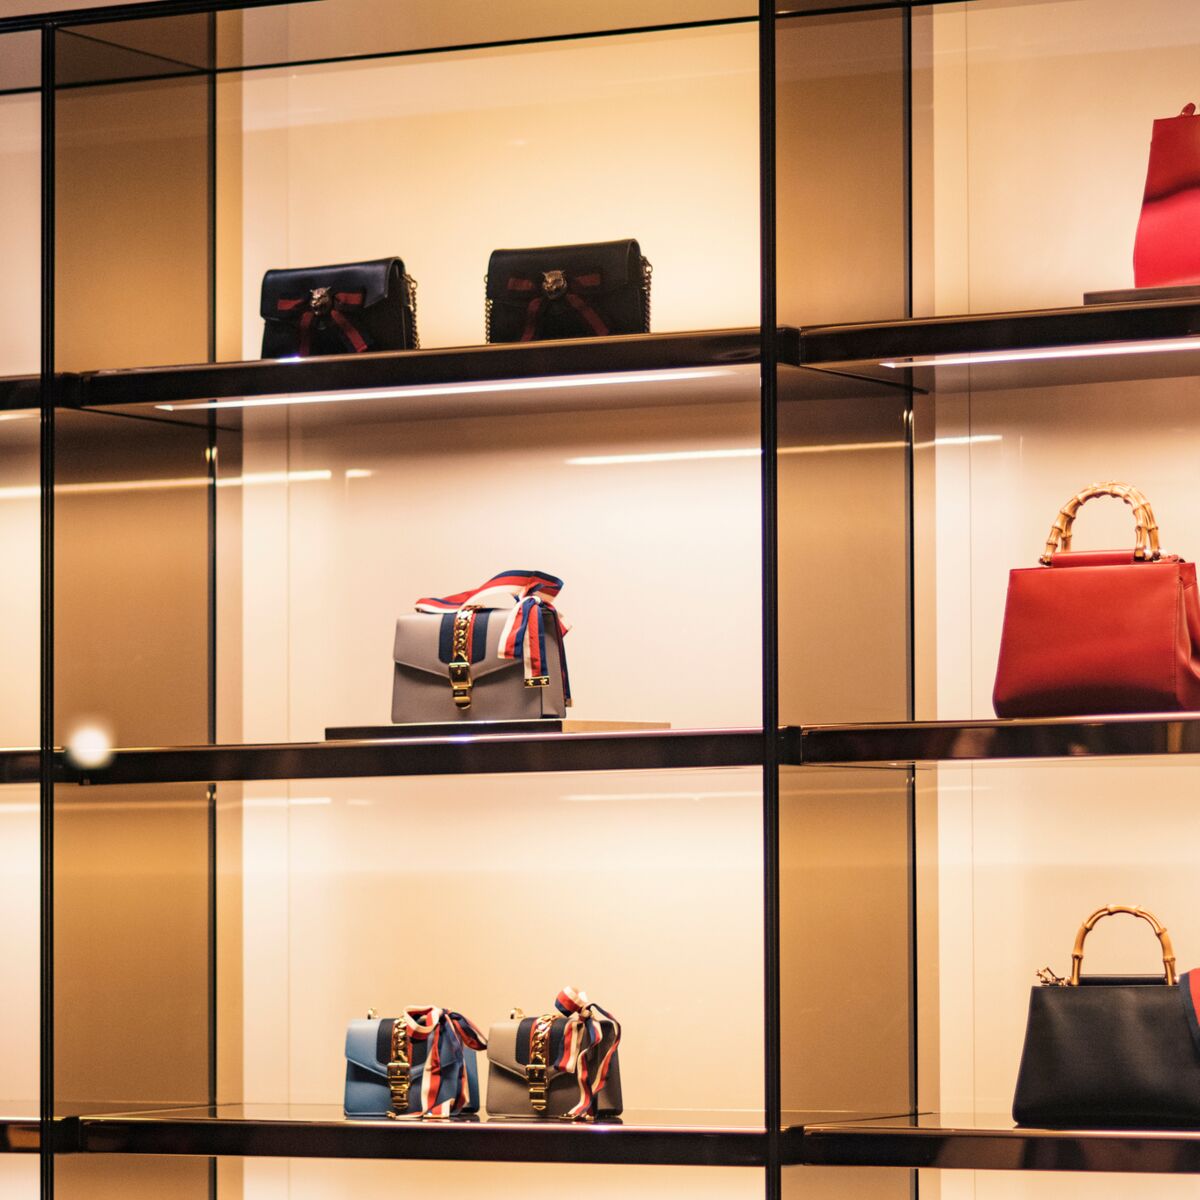 It bag : les sacs de luxe les plus vendus - Femme Actuelle